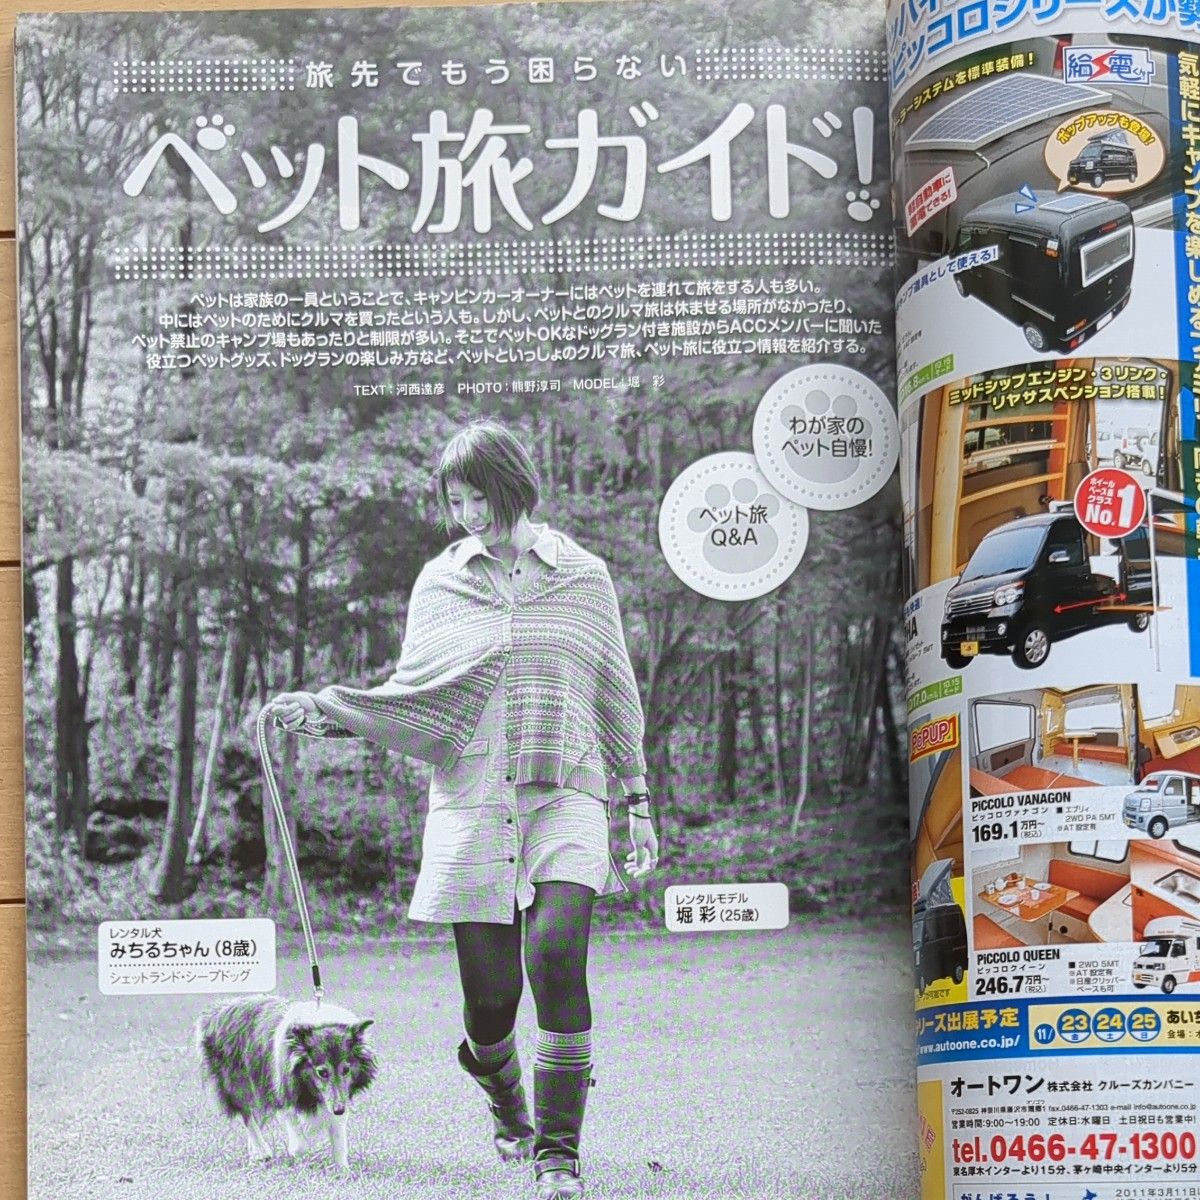 オートキャンパー2012年12月号西日本編立ち寄り湯ガイド2012付録付き